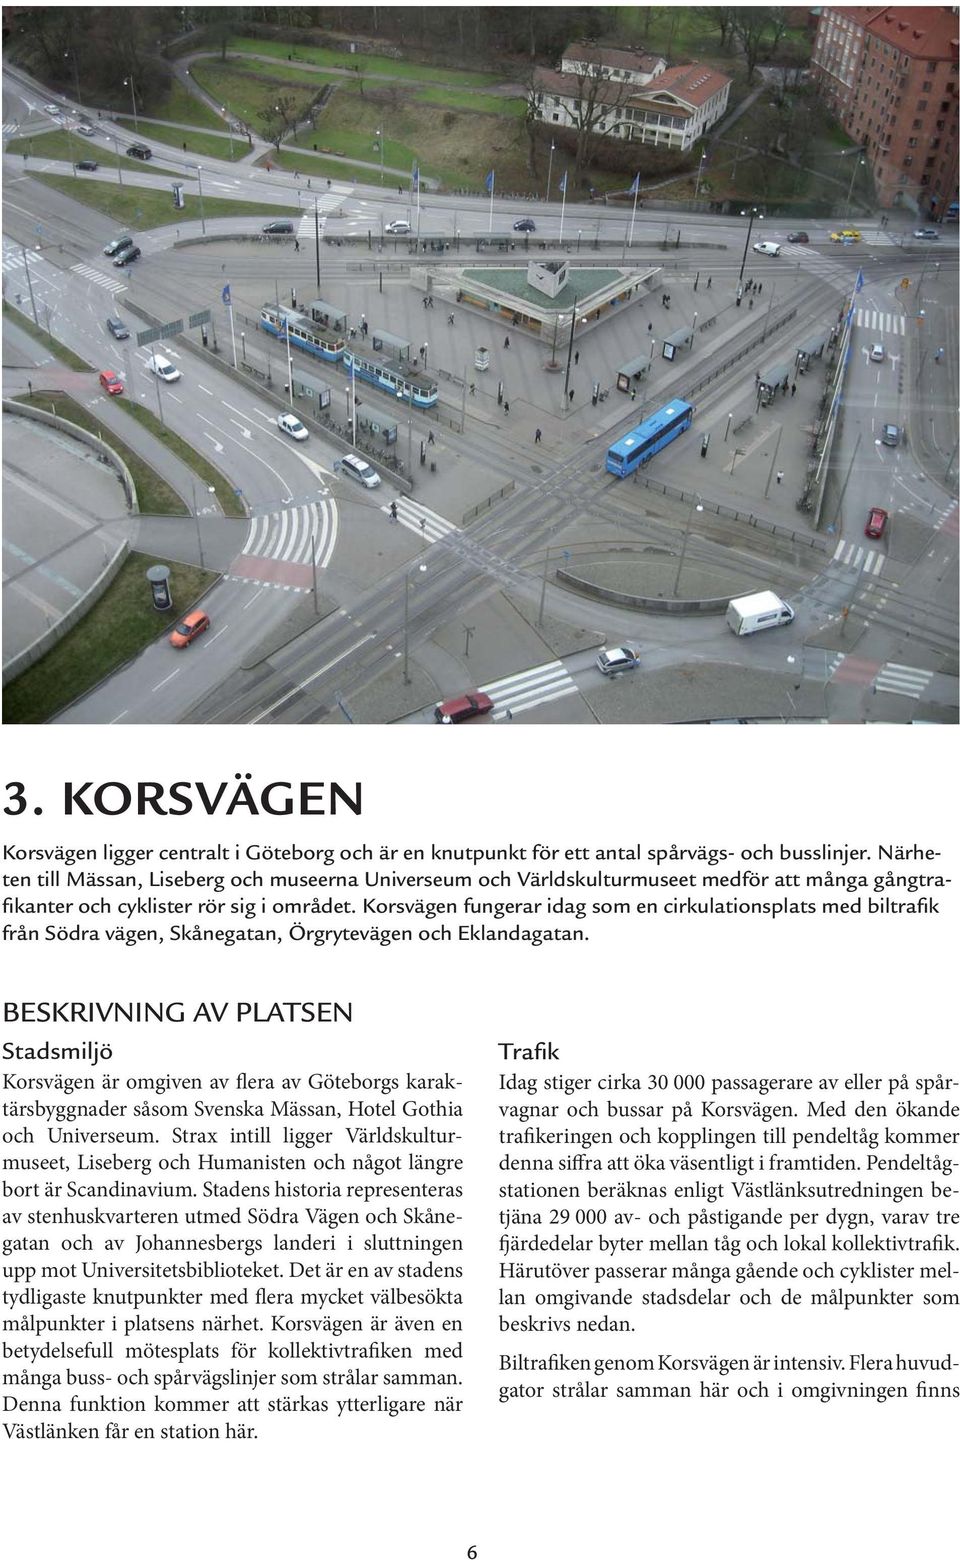 Korsvägen fungerar idag som en cirkulationsplats med biltrafik från Södra vägen, Skånegatan, Örgrytevägen och Eklandagatan.